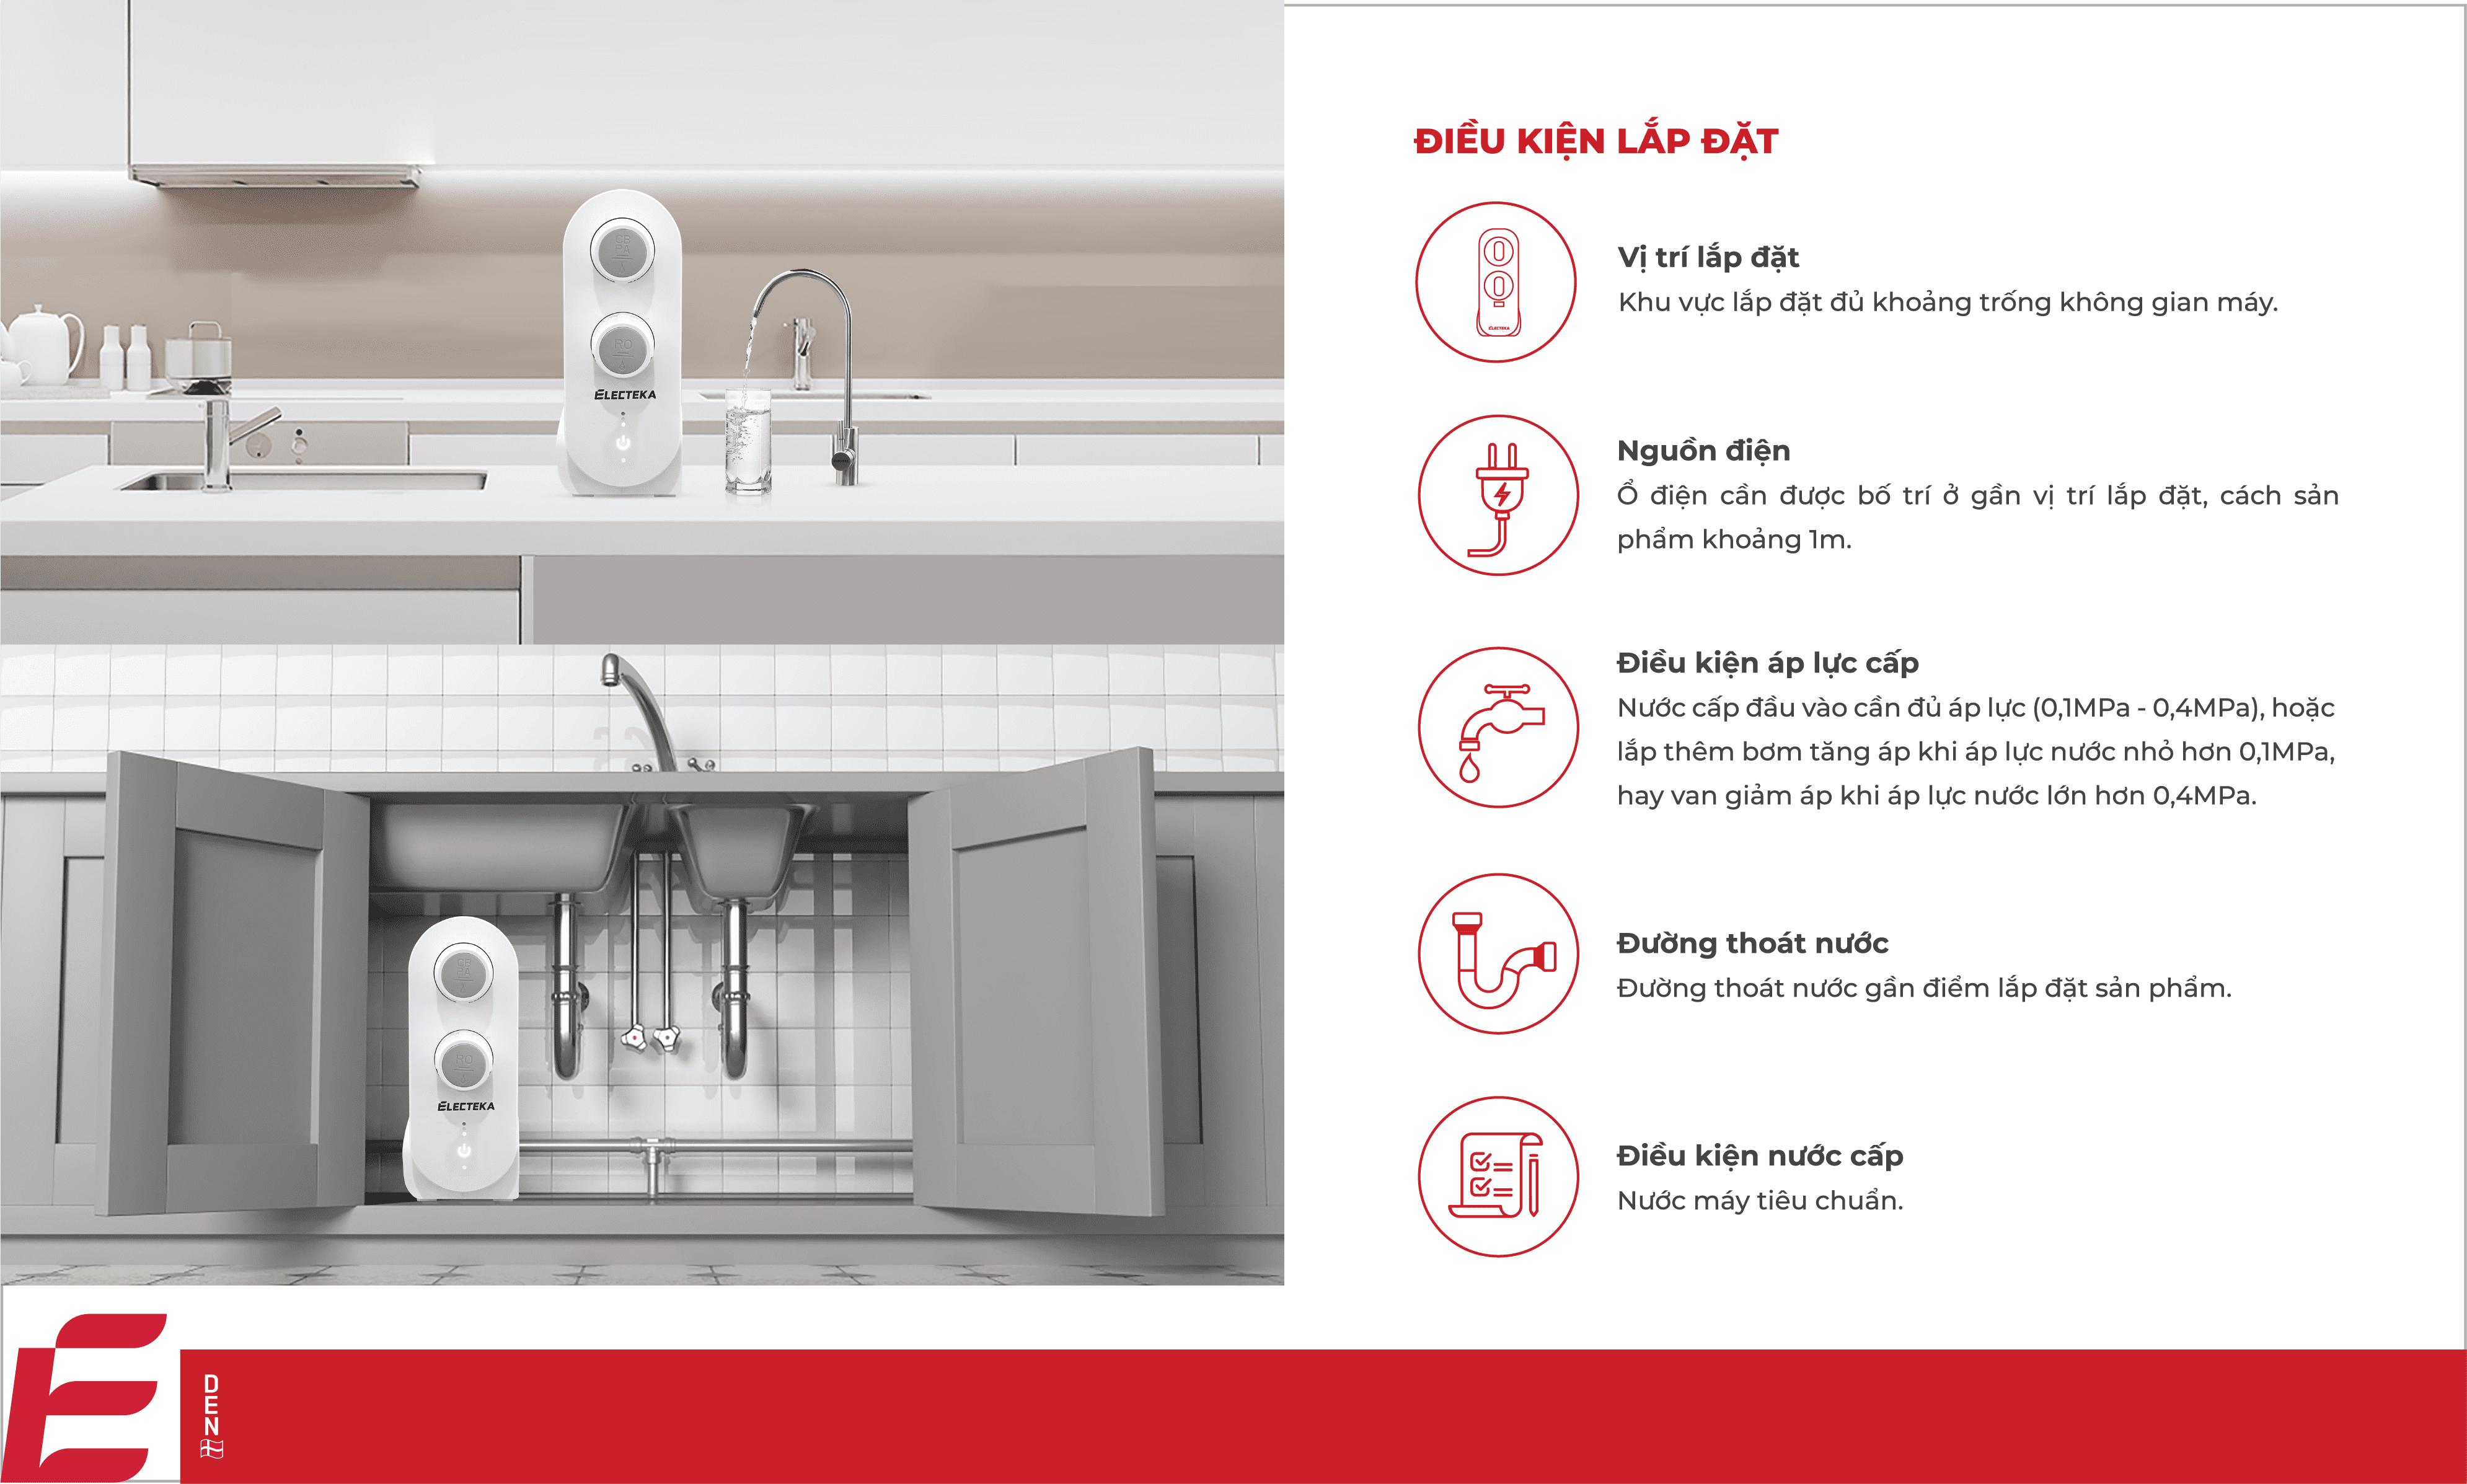 Điều kiện lắp đặt của máy lọc nước RO Electeka S7 Pro để gầm tủ bếp